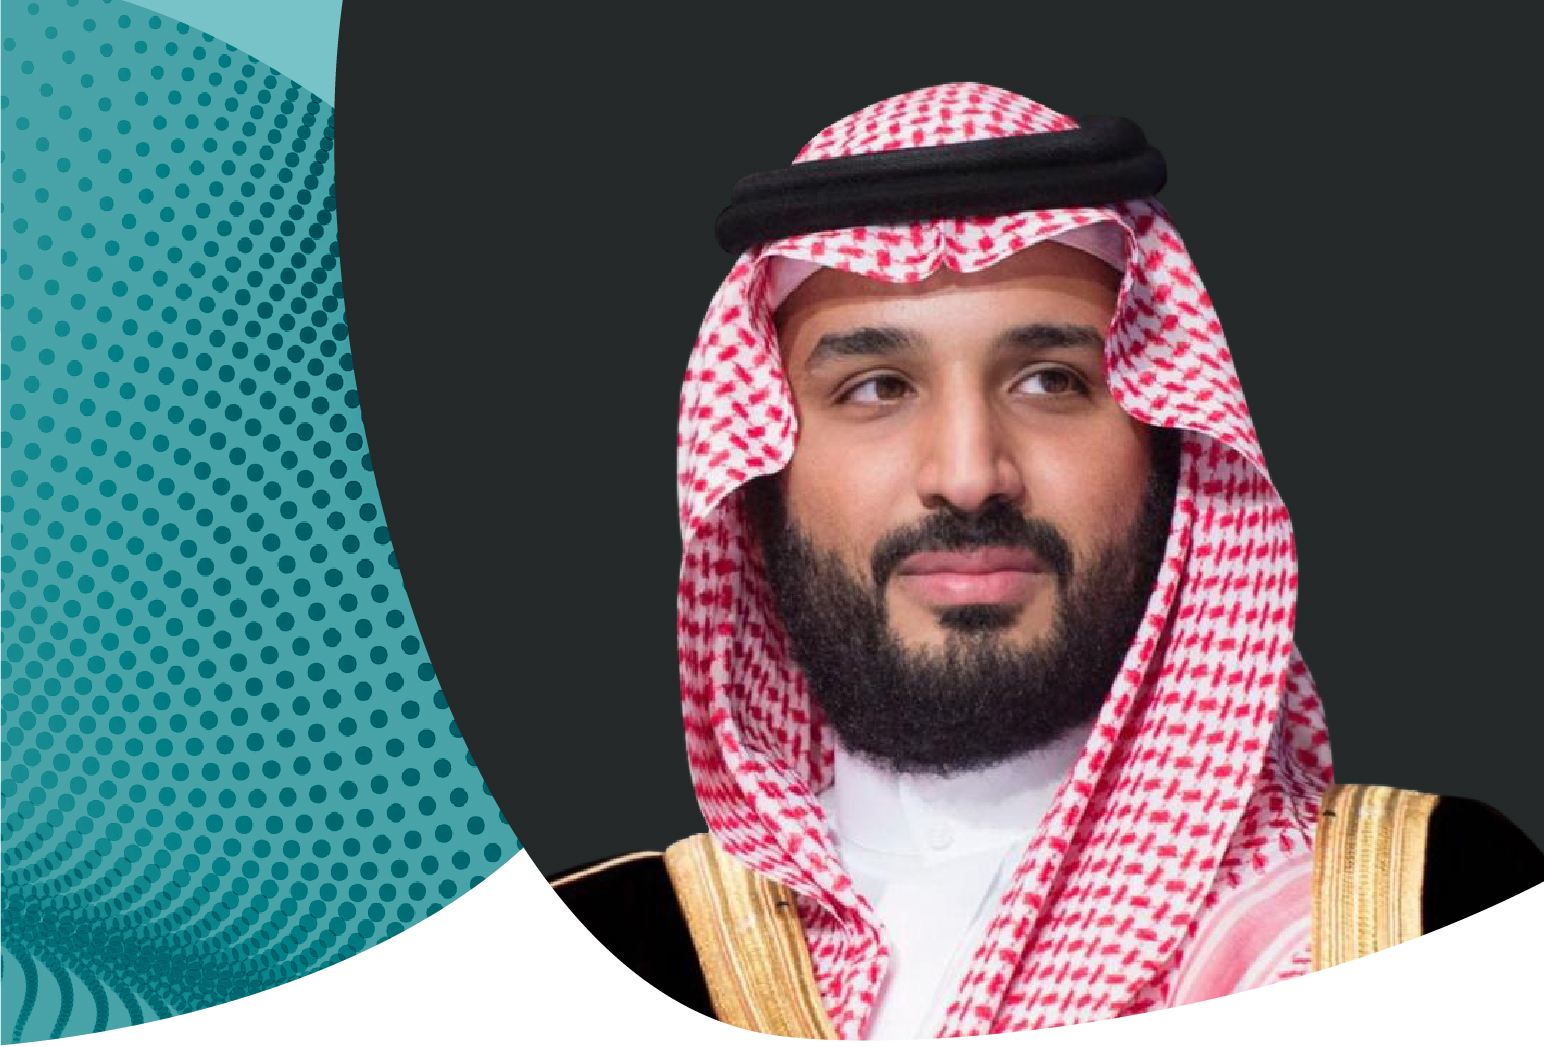 سمو ولي العهد يطلق الاستراتيجية الجديدة لجامعة الملك عبدالله للعلوم والتقنية "كاوست"